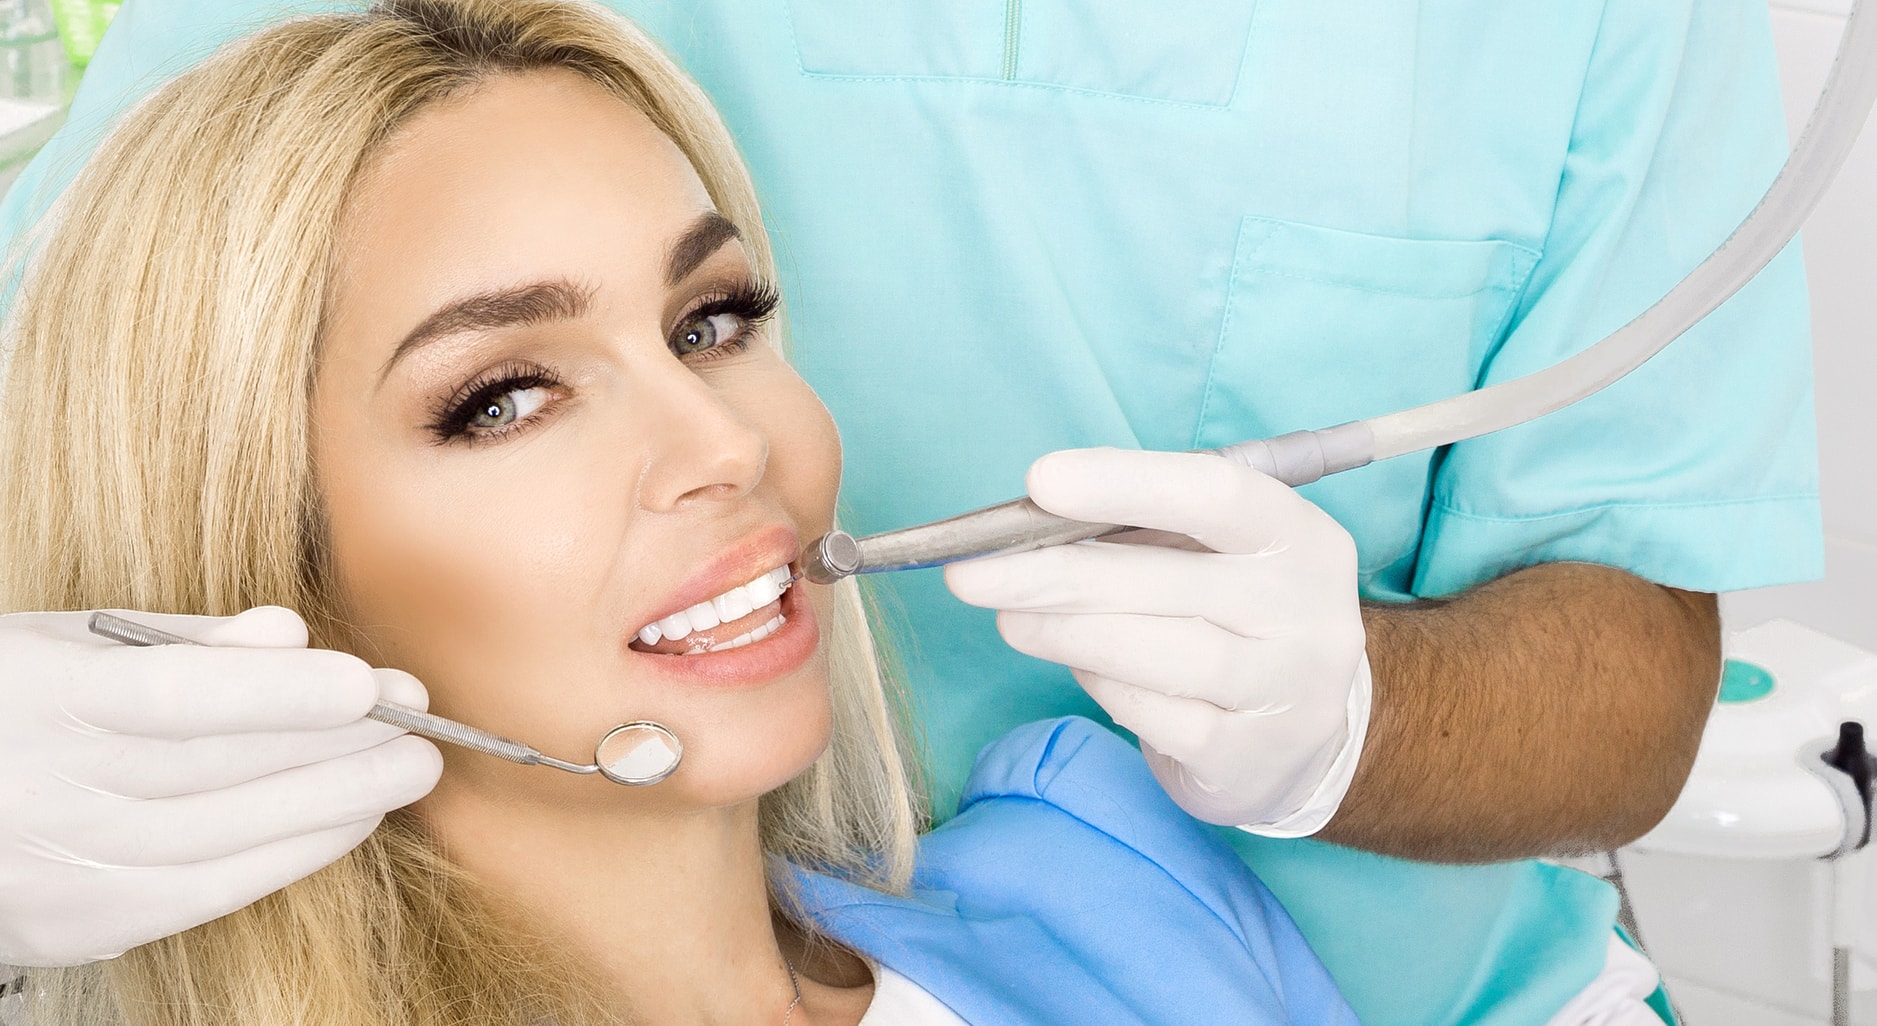 See the influence of instagram on cosmetic dental veneers